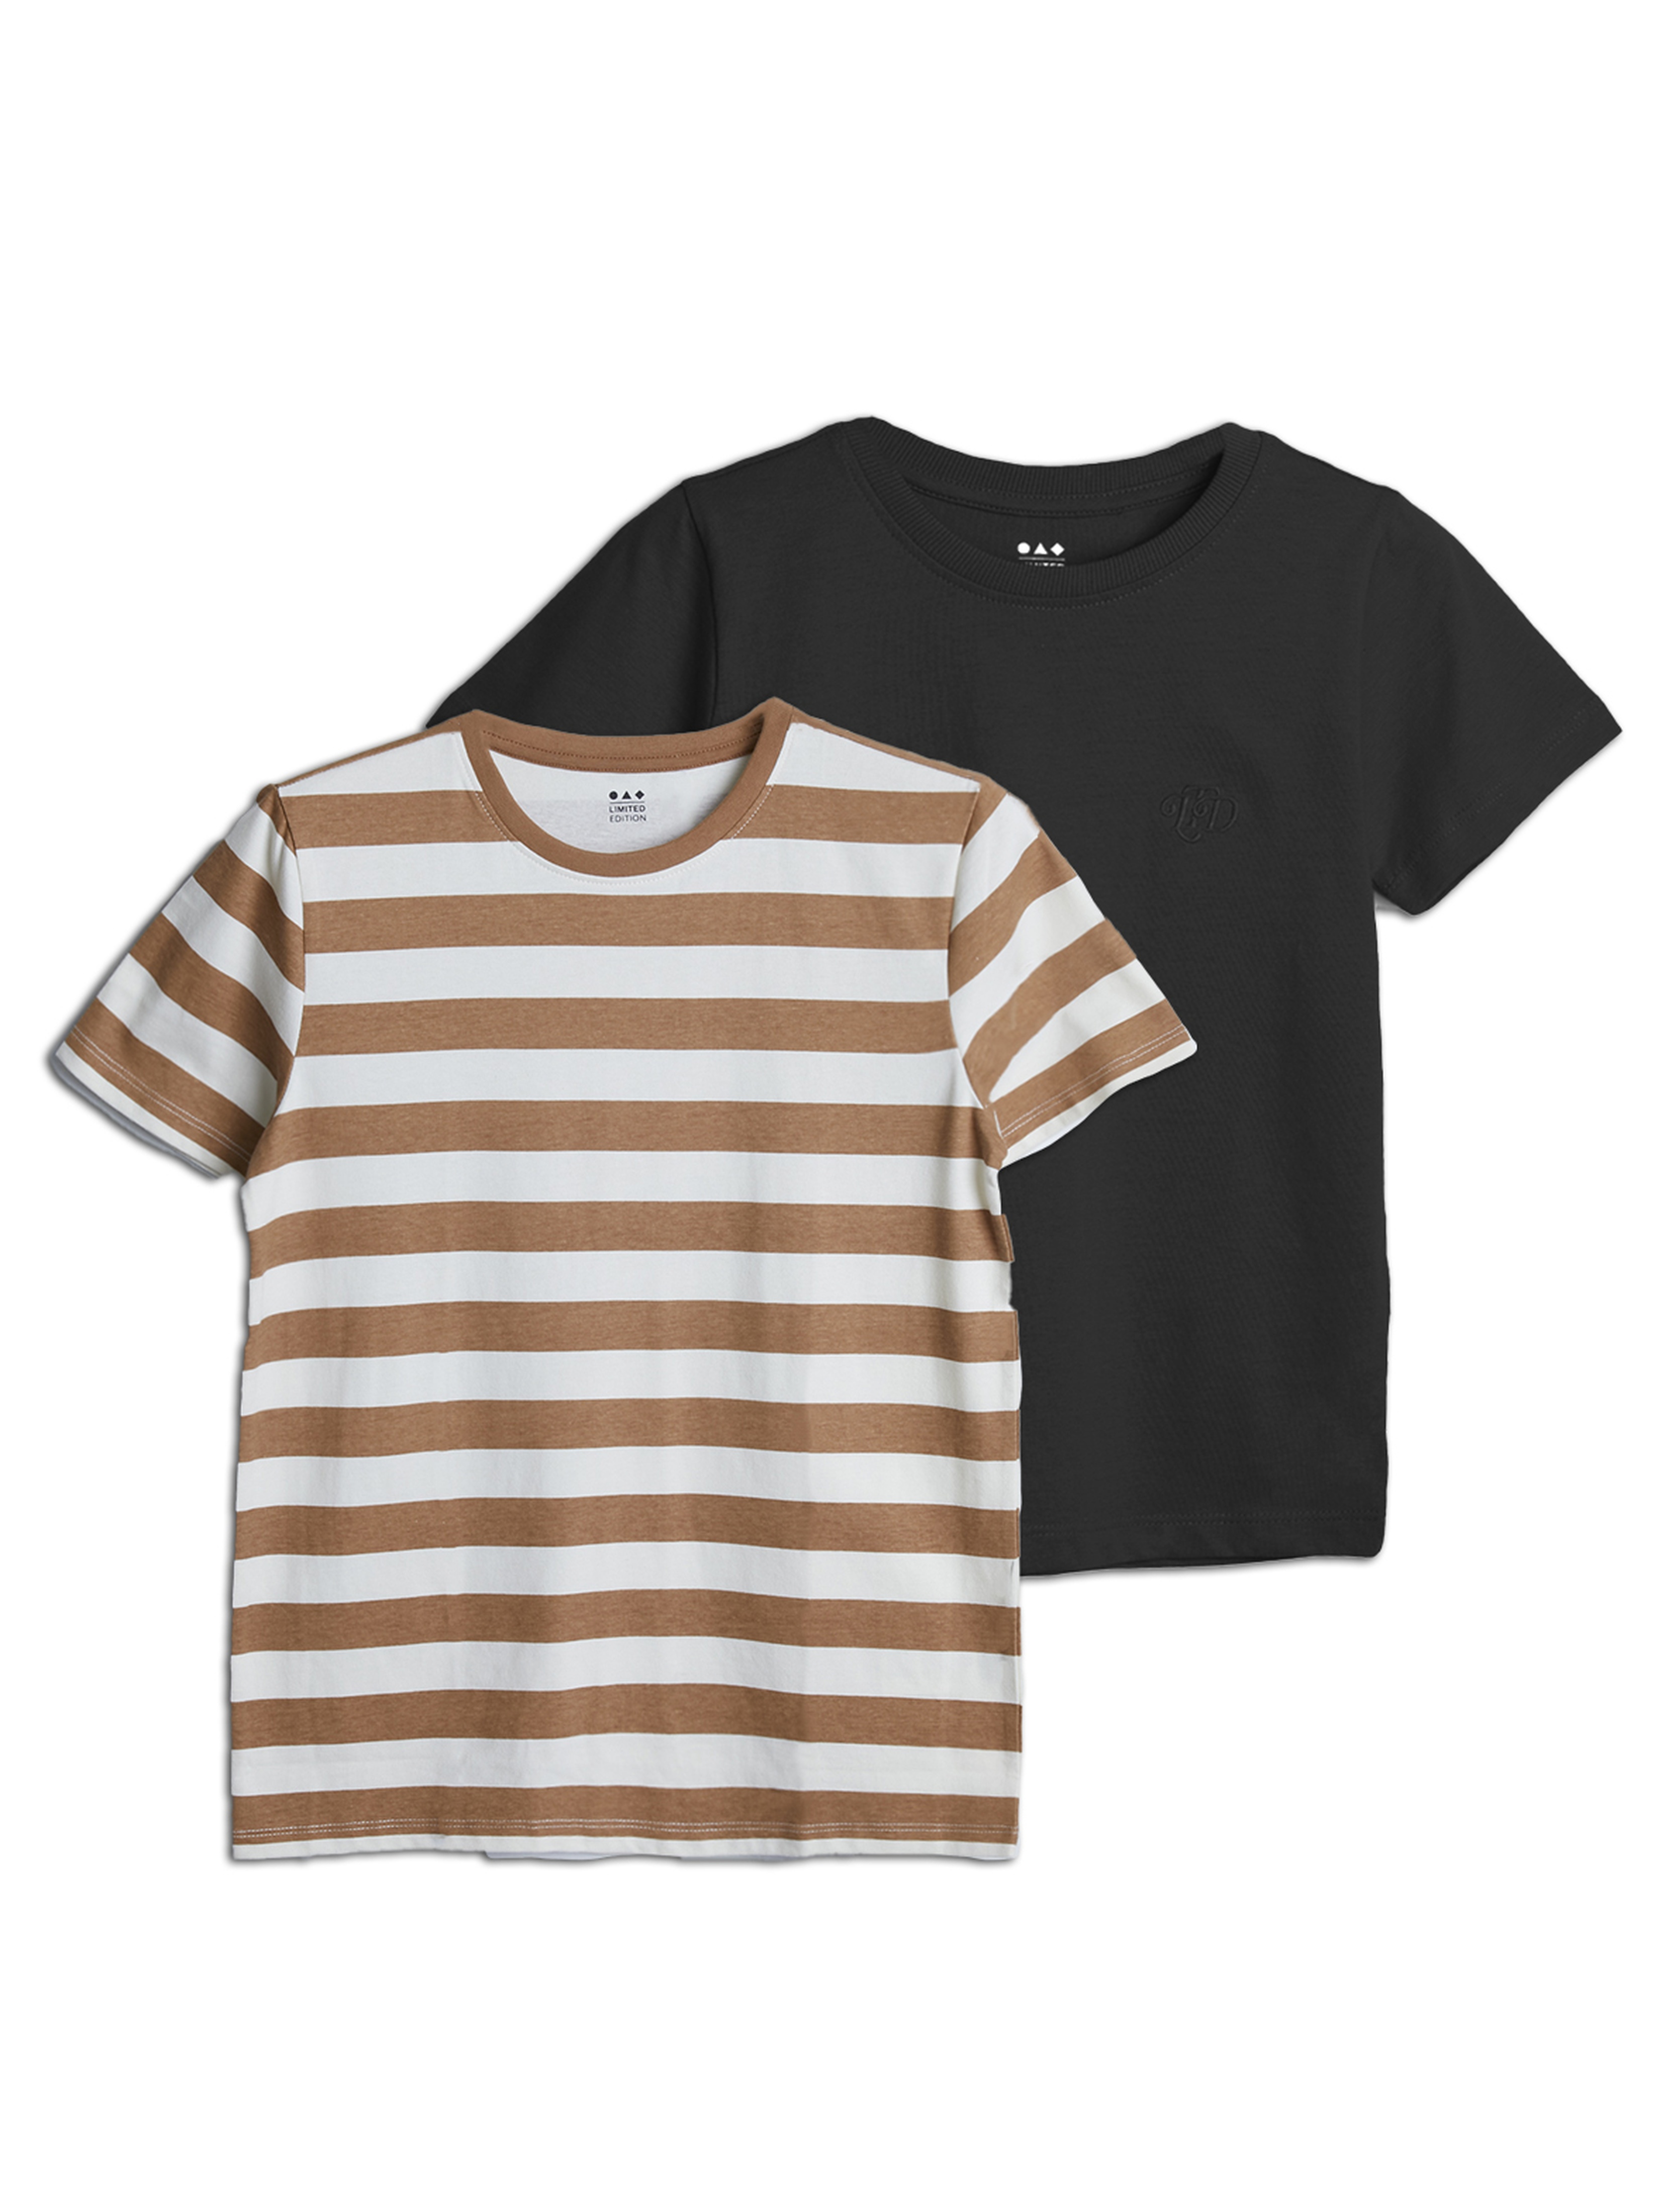 2pak t-shirtów dla dziecka - Limited Edition